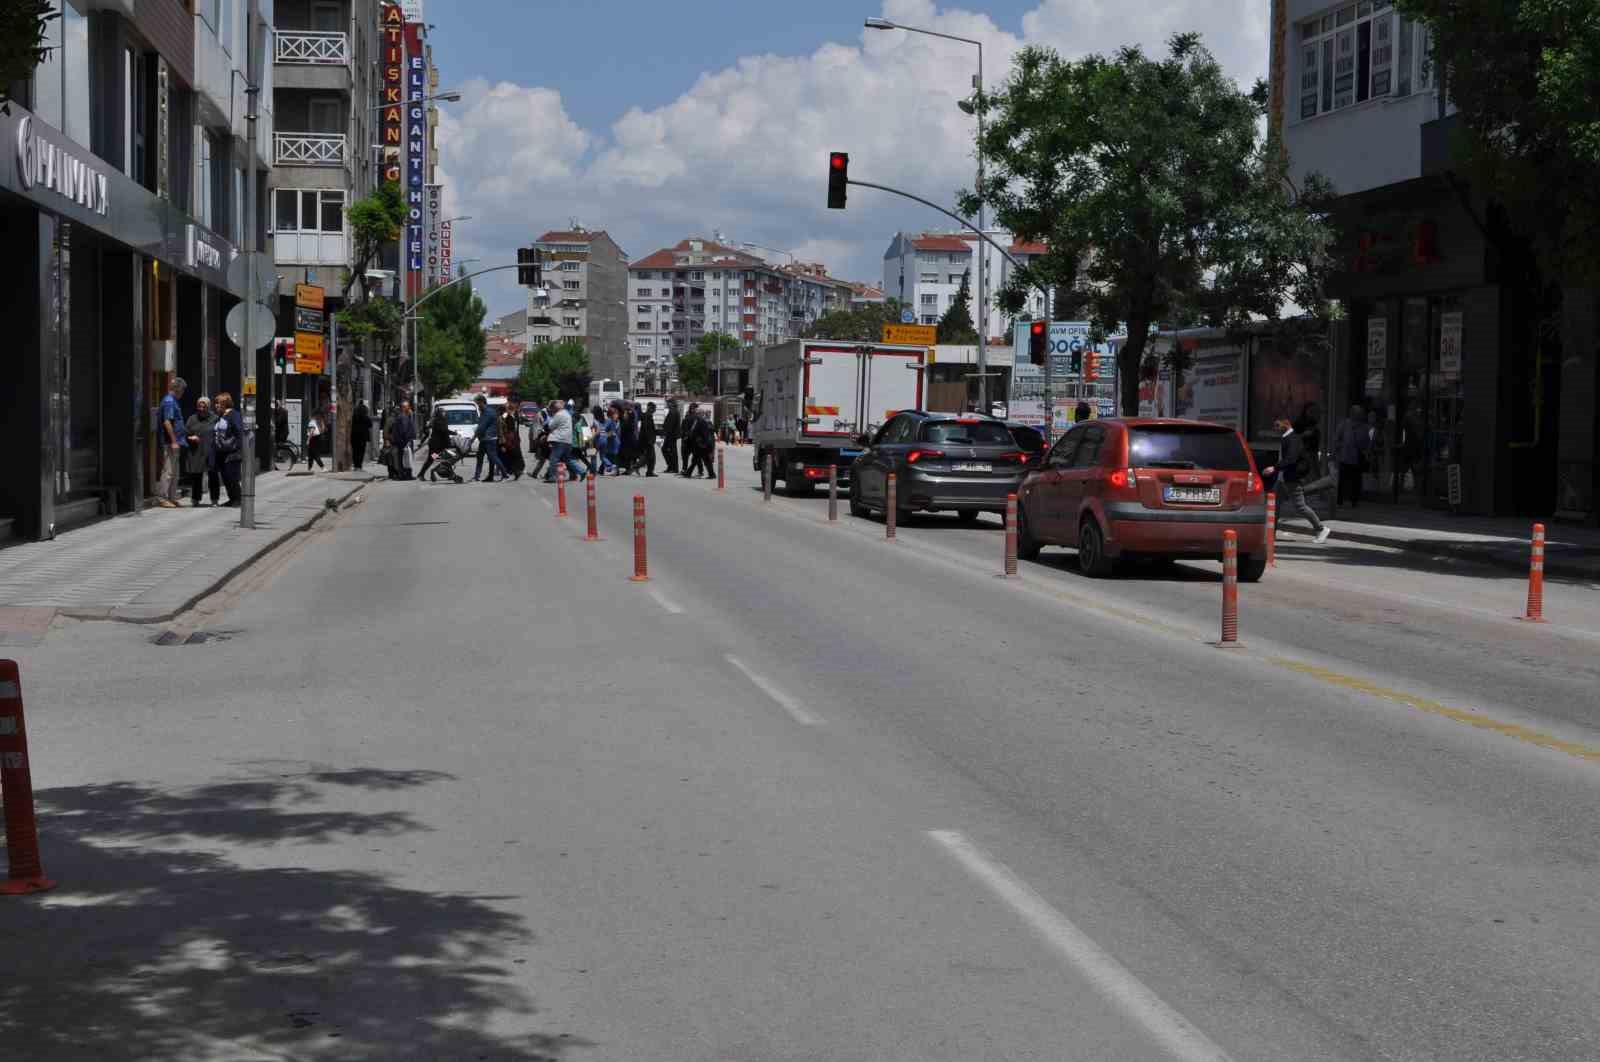 Eskişehir’de bazı caddelerde Cumhurbaşkanı 2. tur seçim önlemleri alınacak